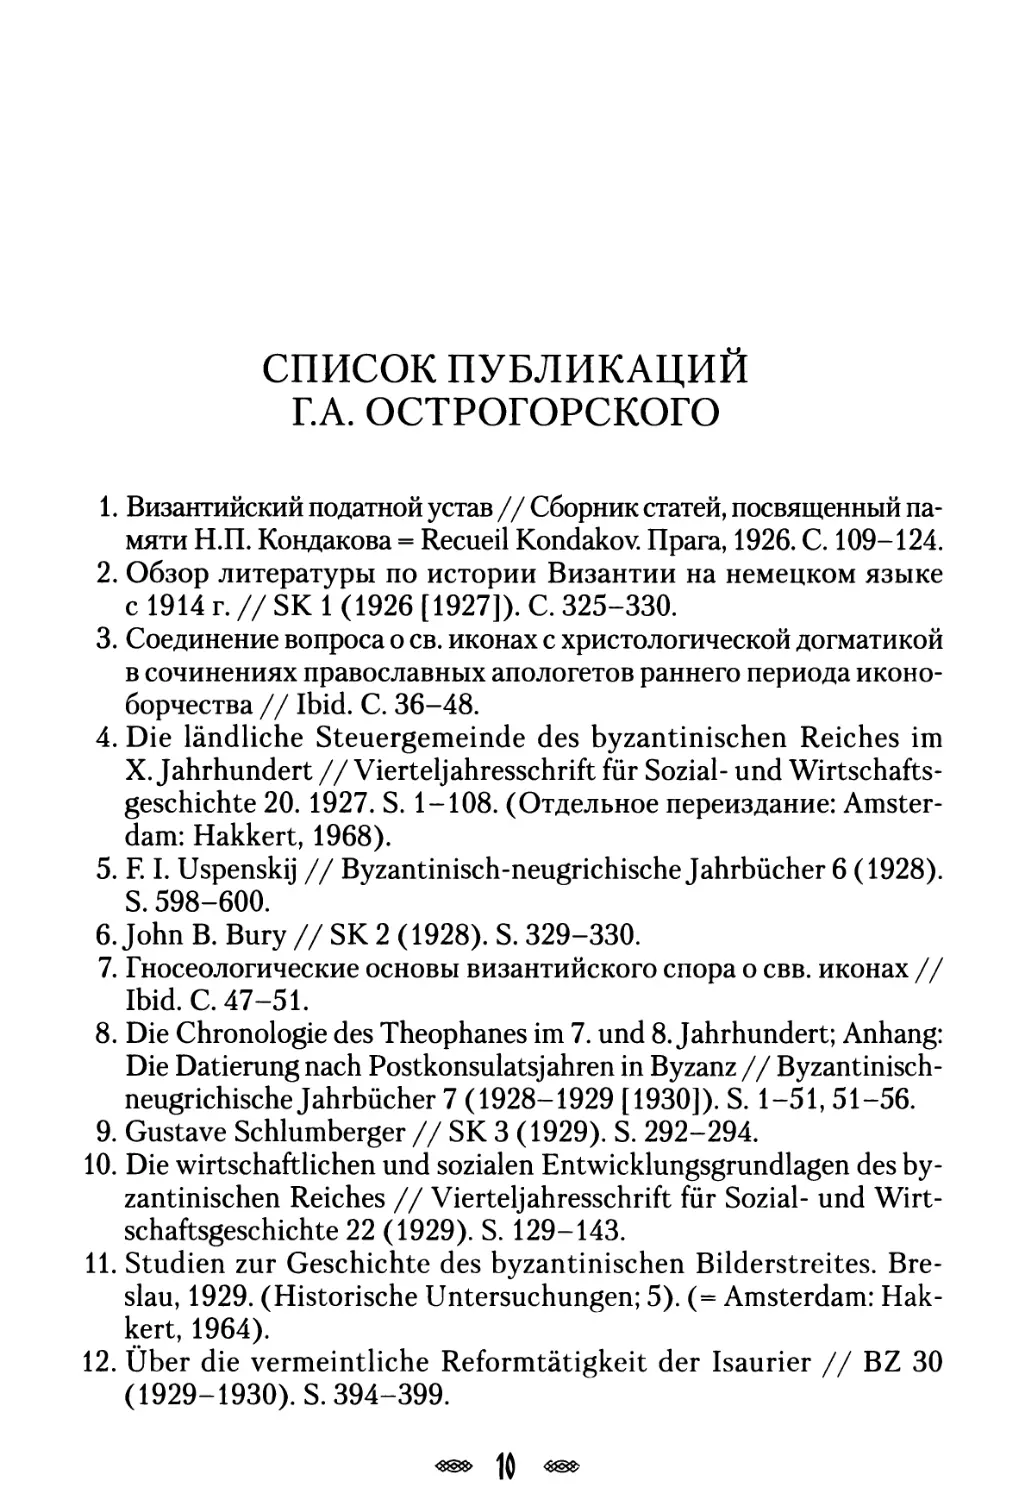 Список работ Г.А. Острогорского